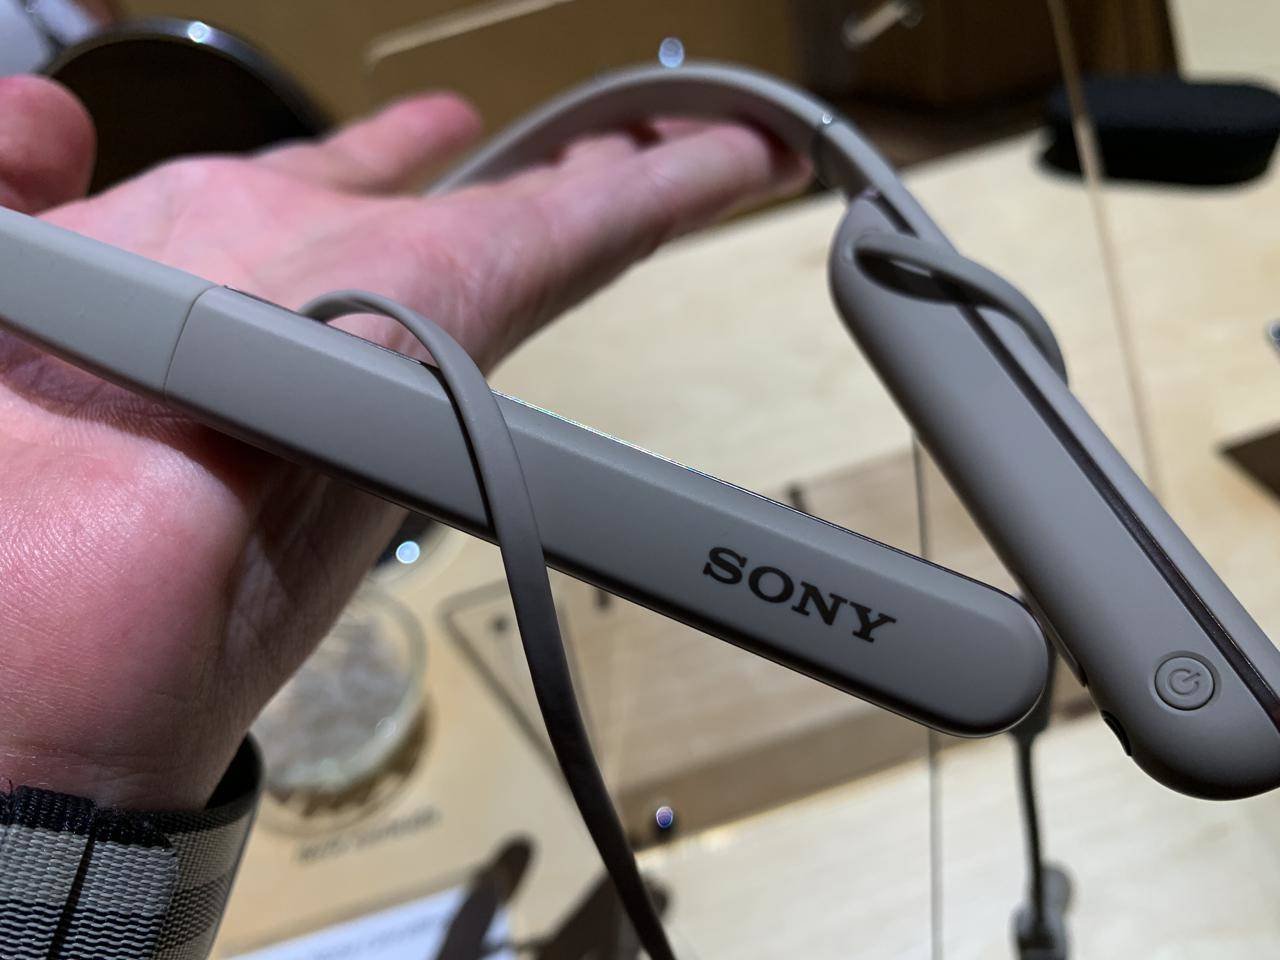 Immagine di Sony WI-1000XM2, cuffie ad archetto con cancellazione attiva del rumore